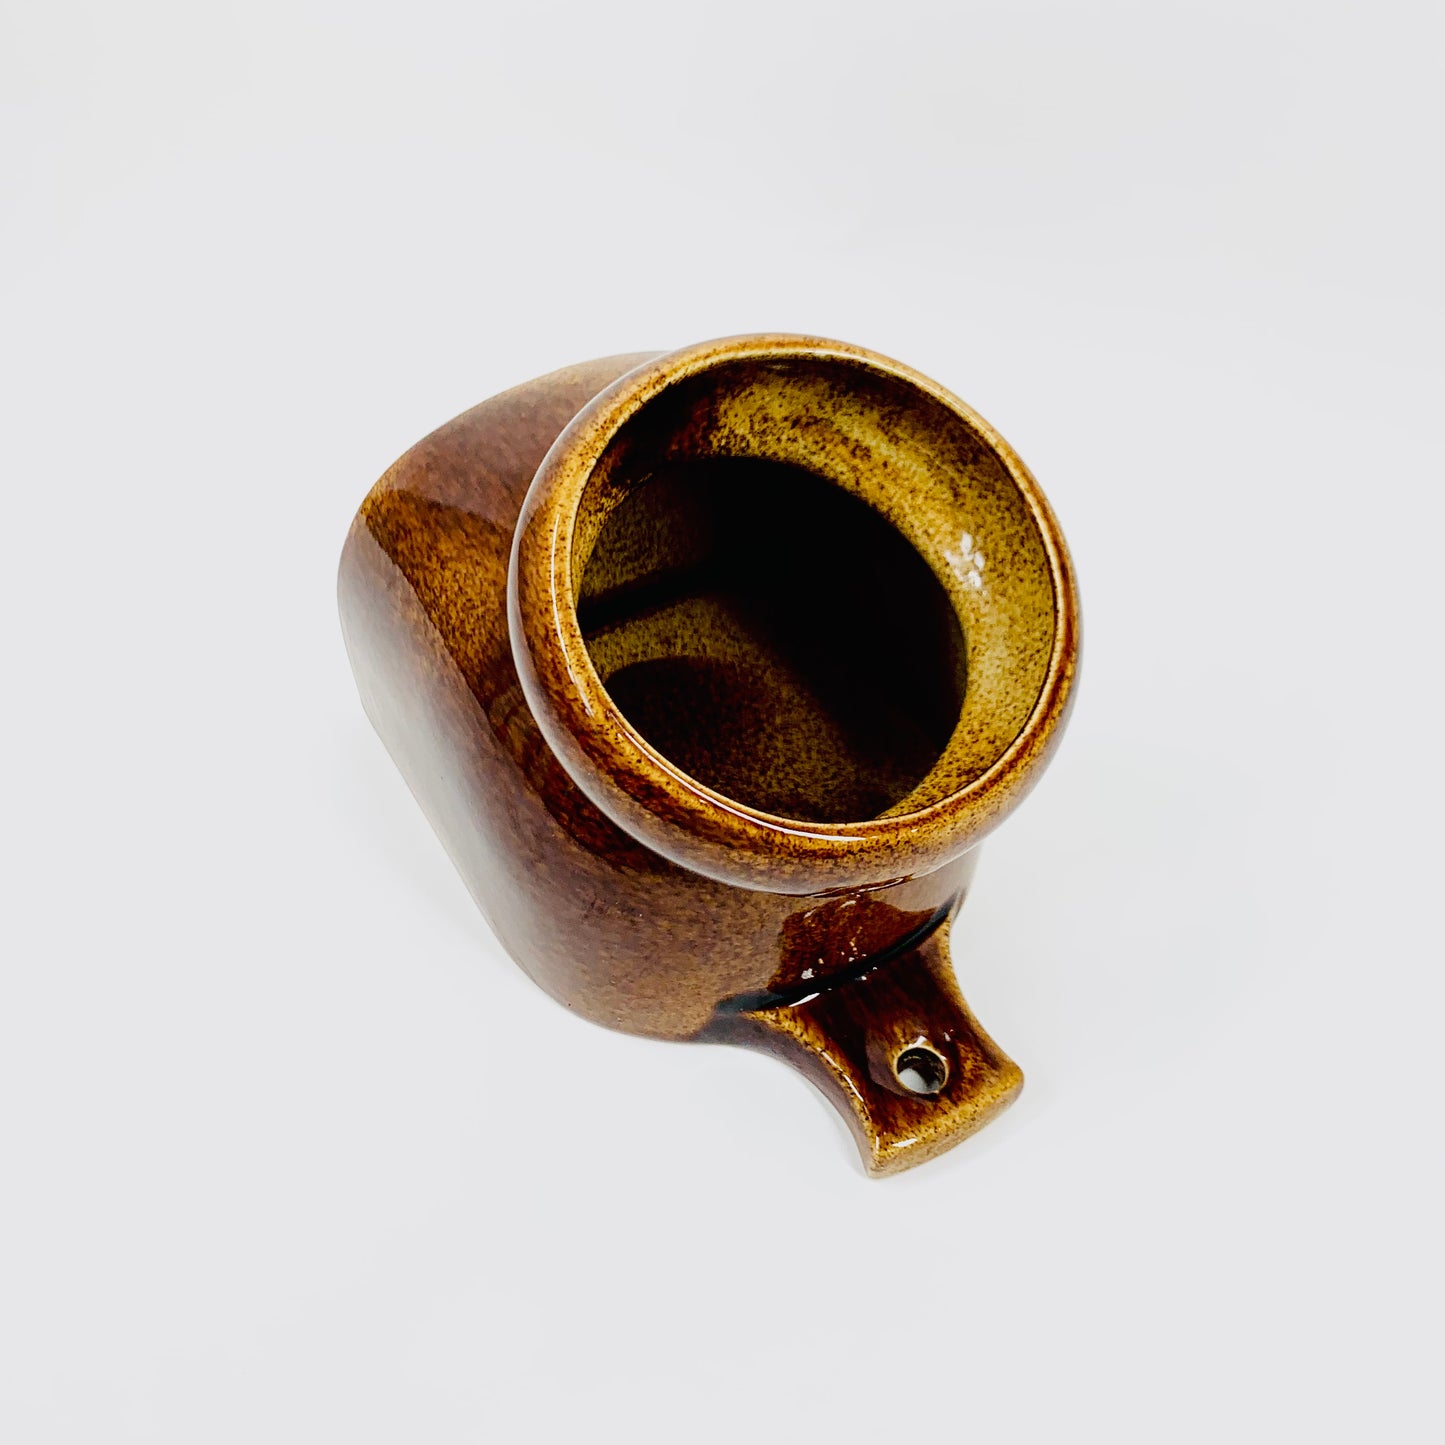 1960s Suffolk Wattlefield brown pottery coffee/tea set